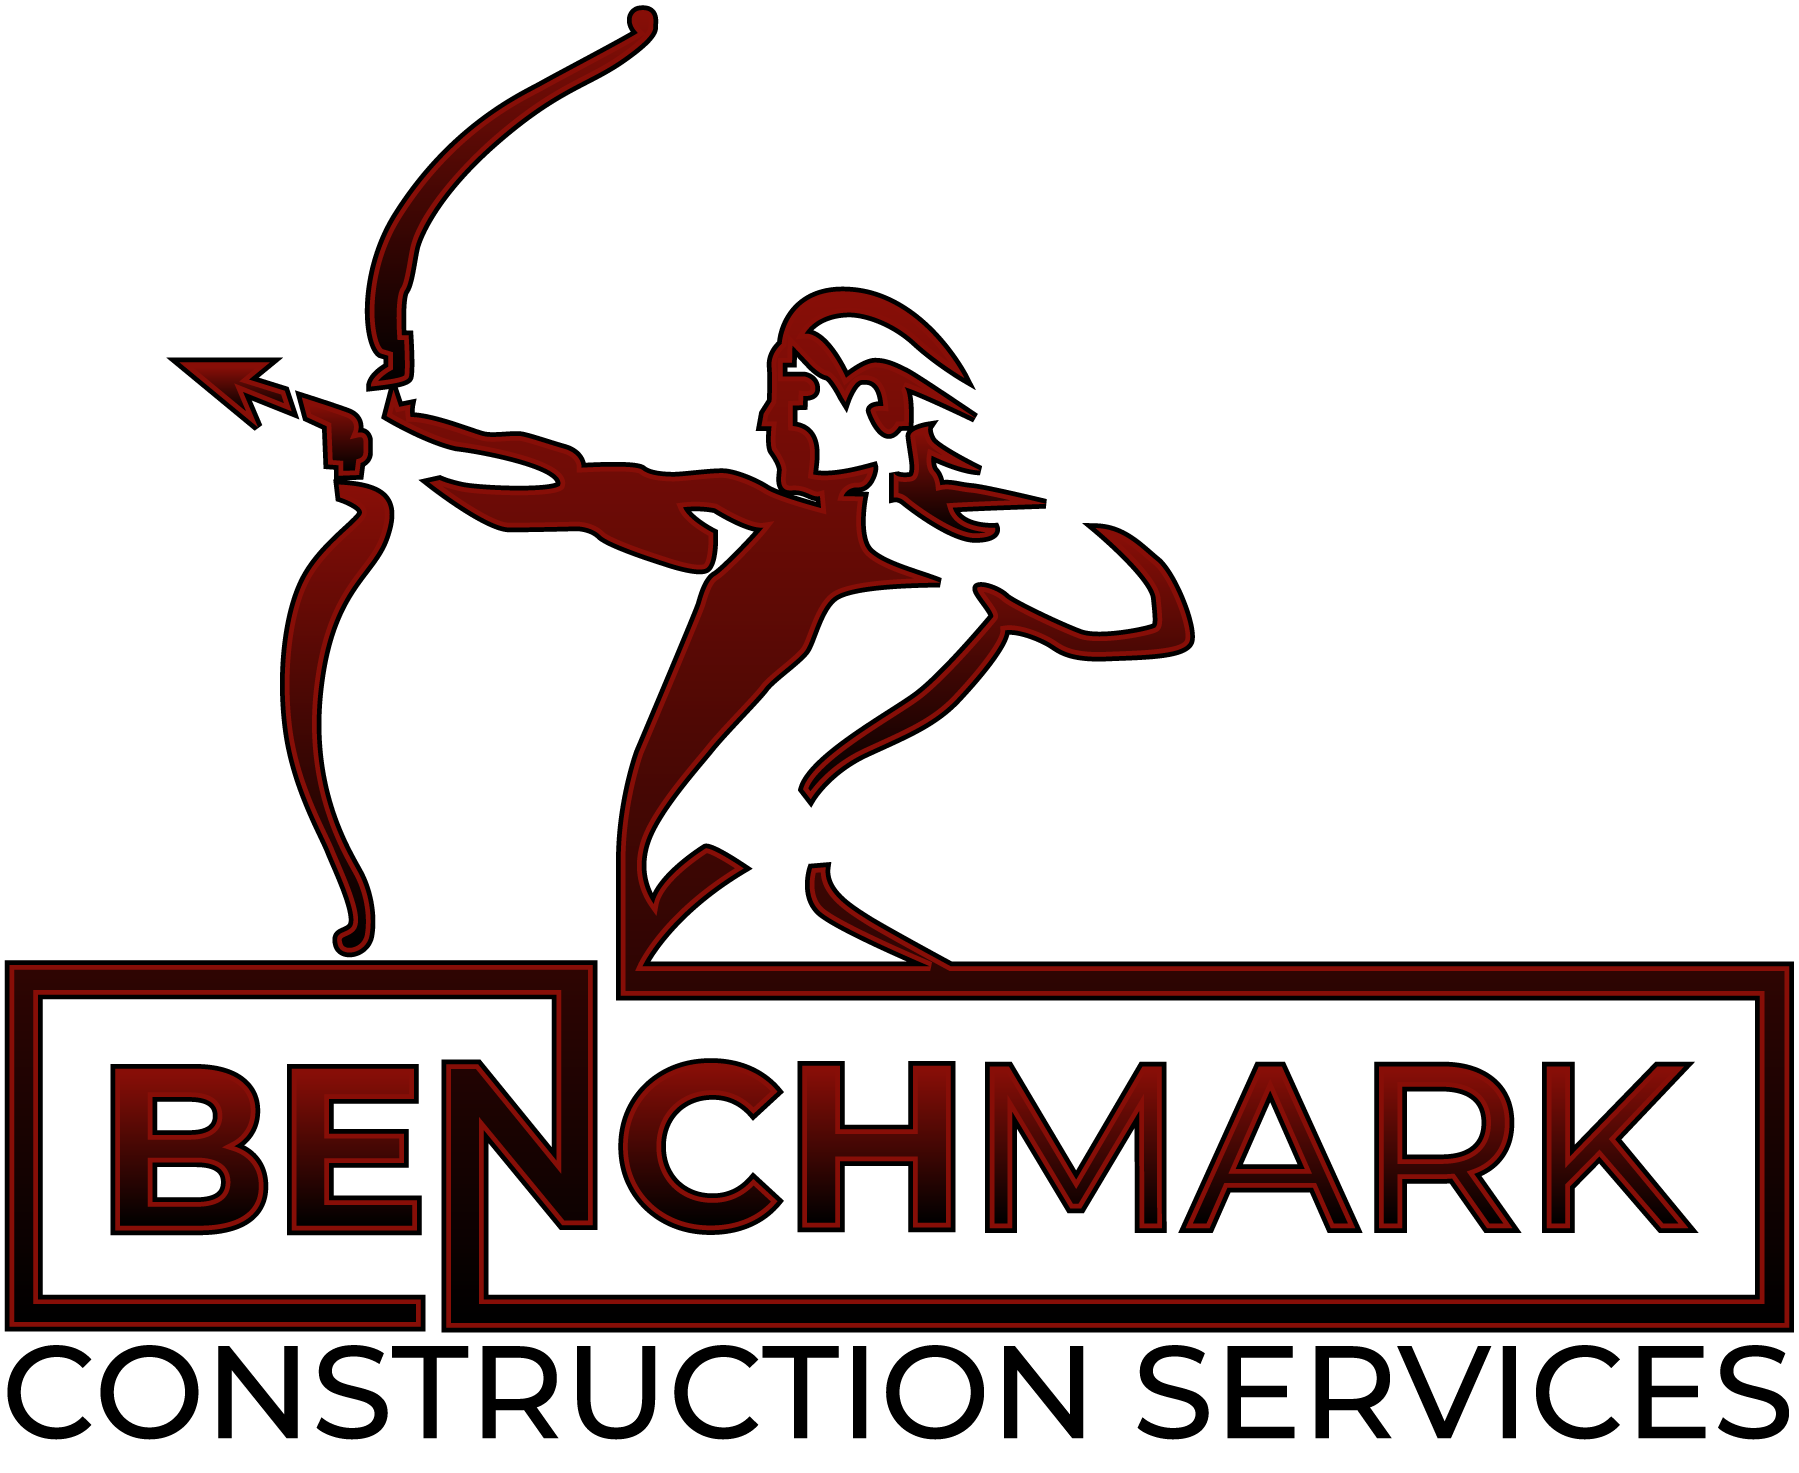 Benchmark Construction Services, Inc. Logo